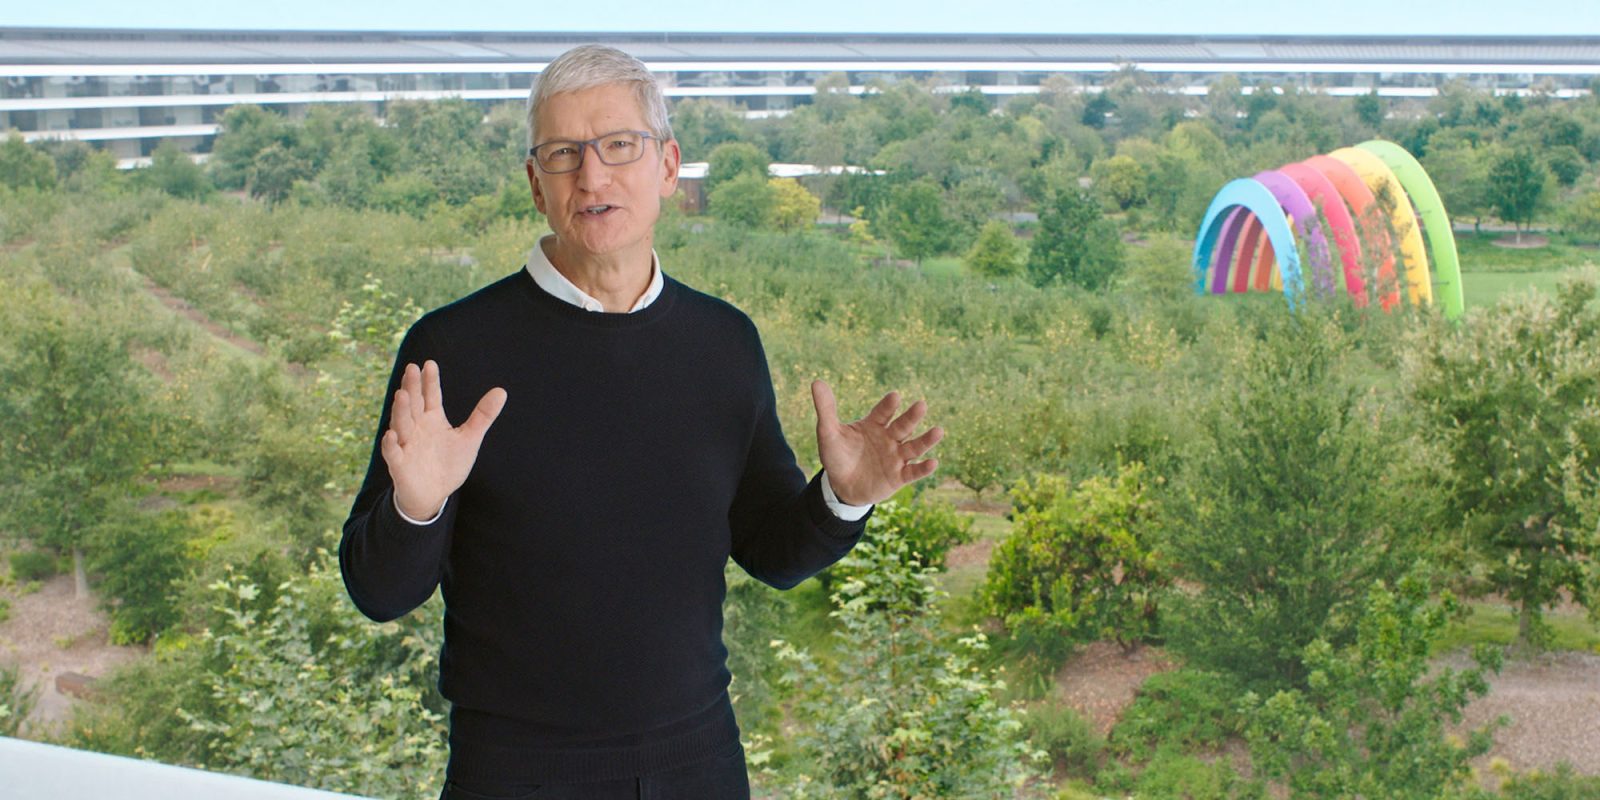 Le chef de la lutte antitrust de l'UE rencontre Tim Cook (le PDG d'Apple photographié à Apple Park)